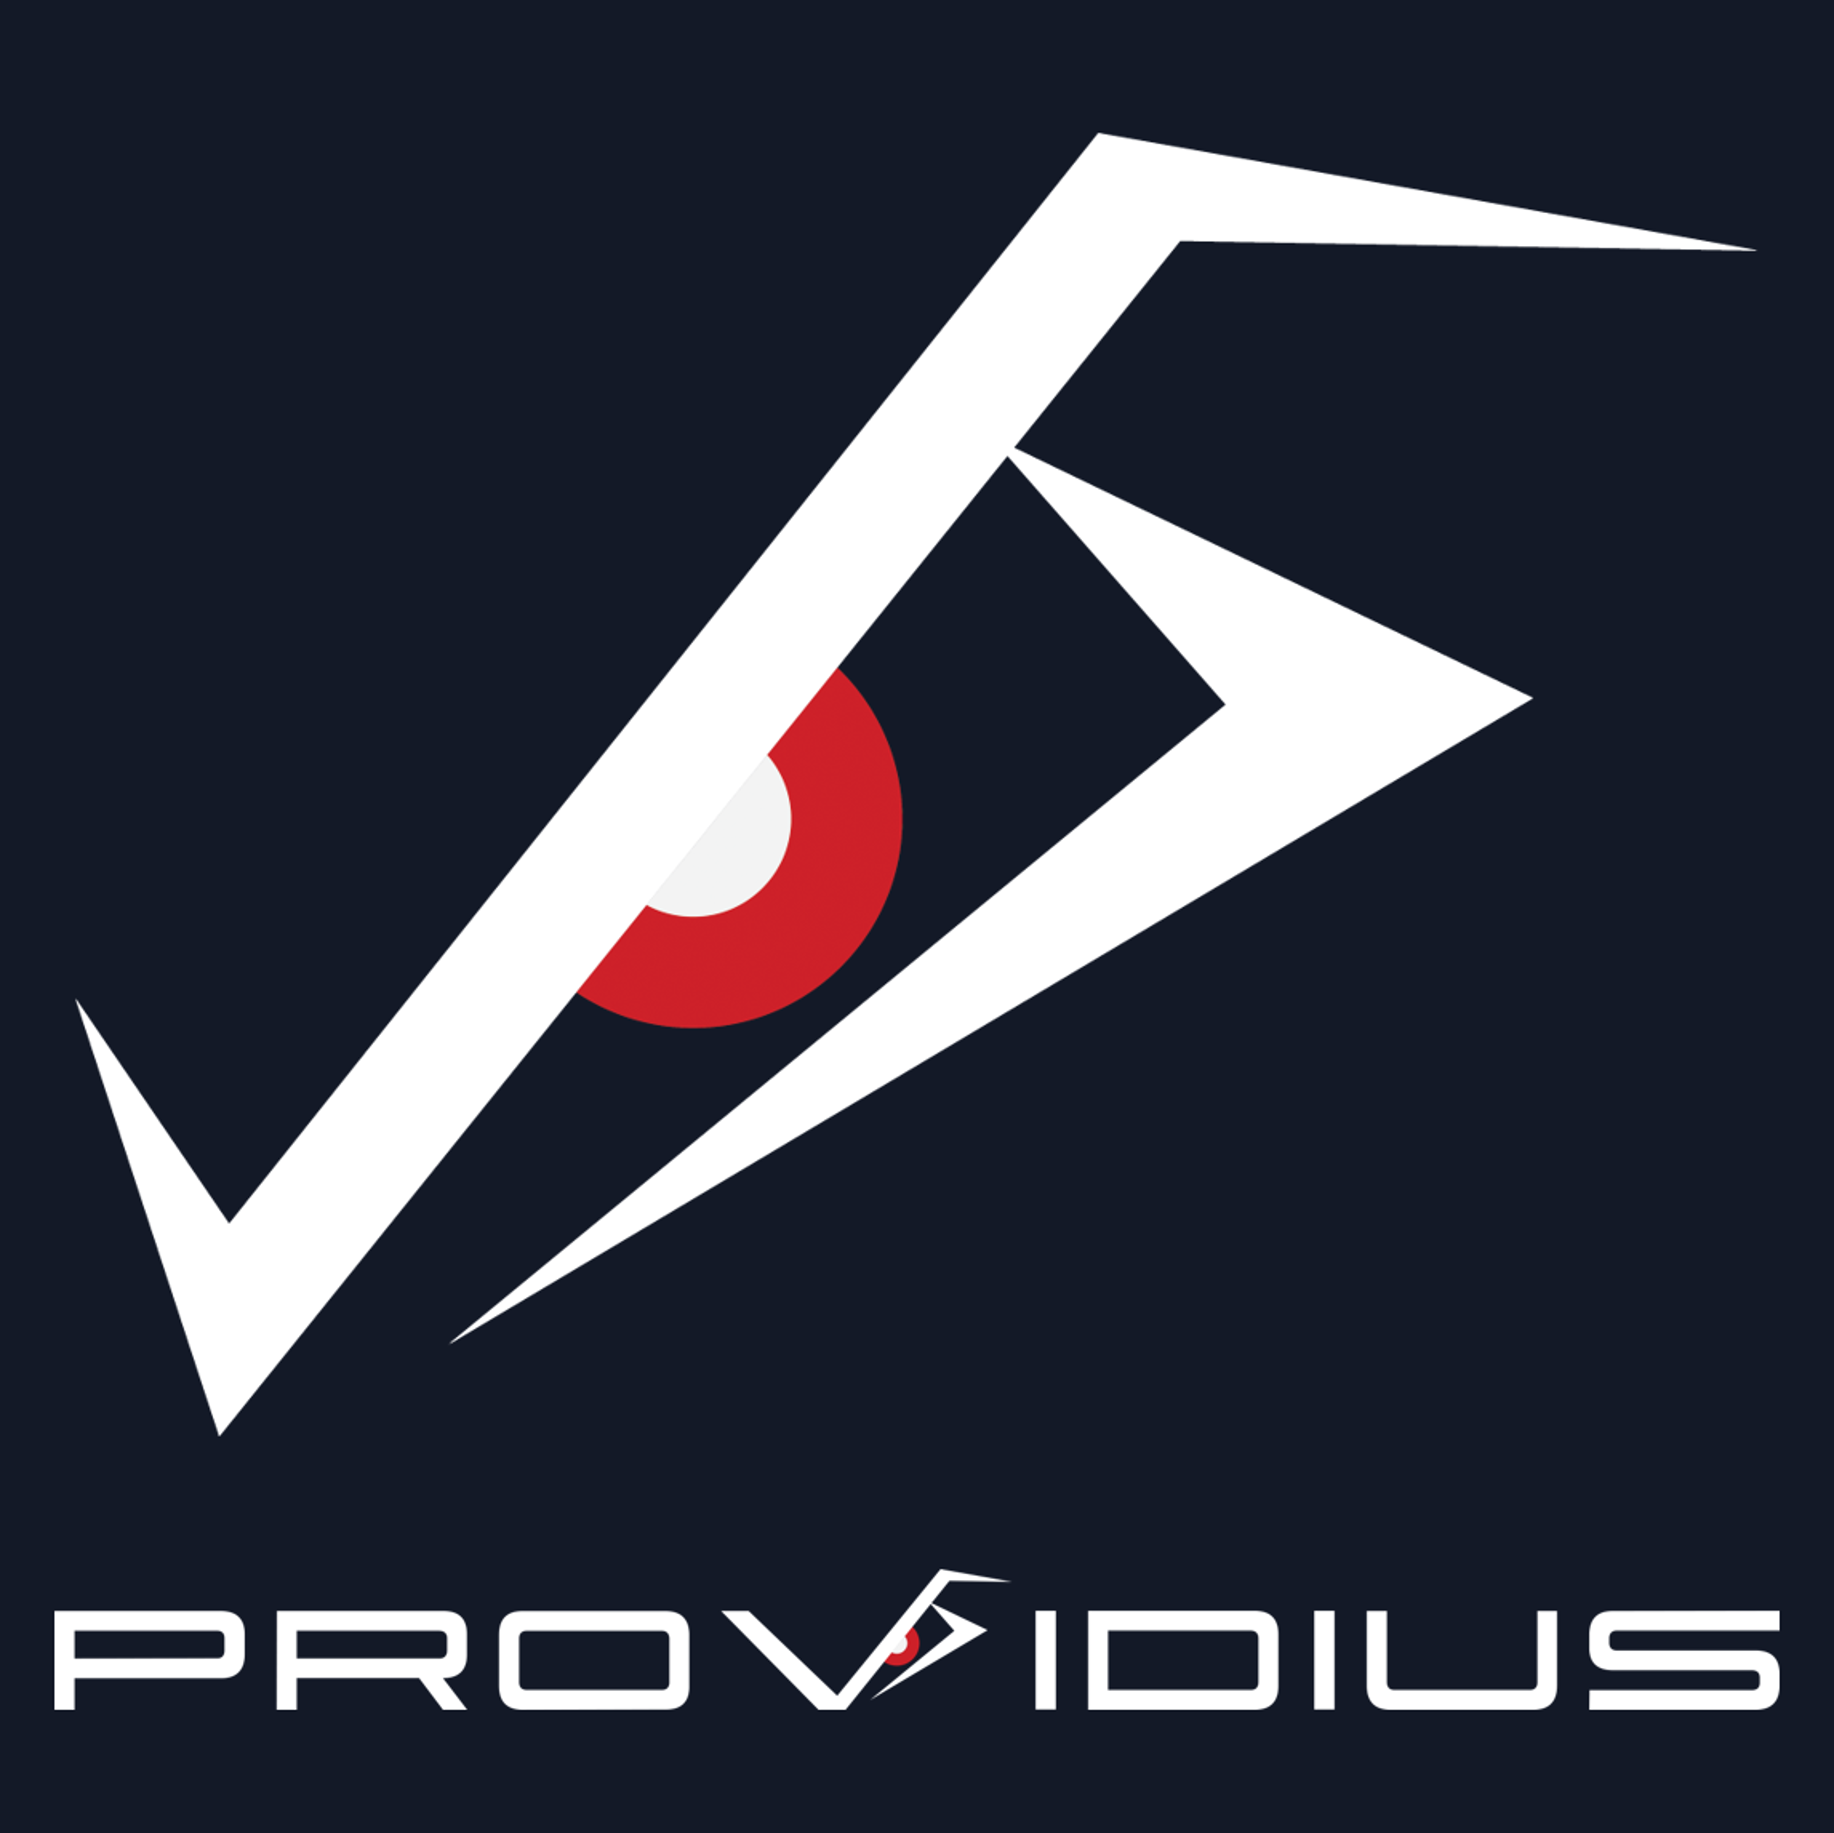 Providius